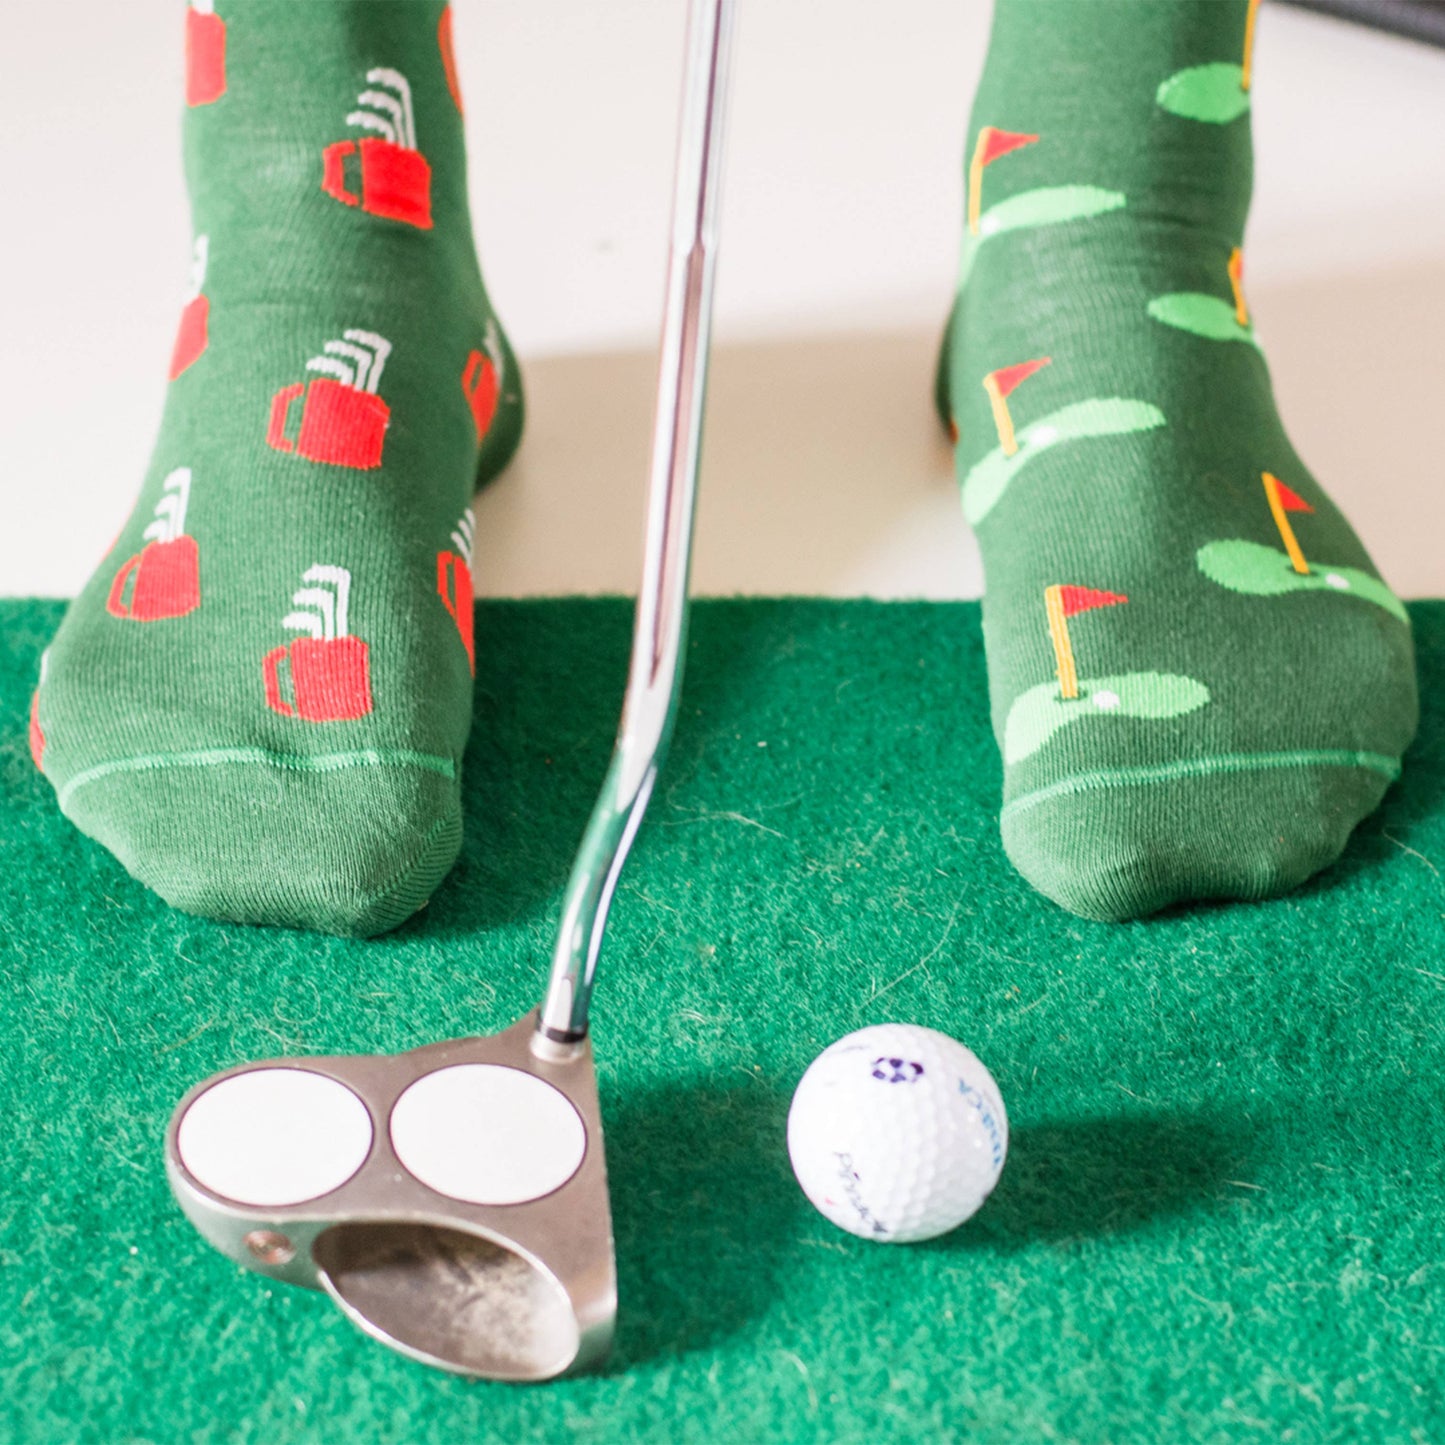 Men’s Socks | Golf Clubs & Green | PGA | Mismatched